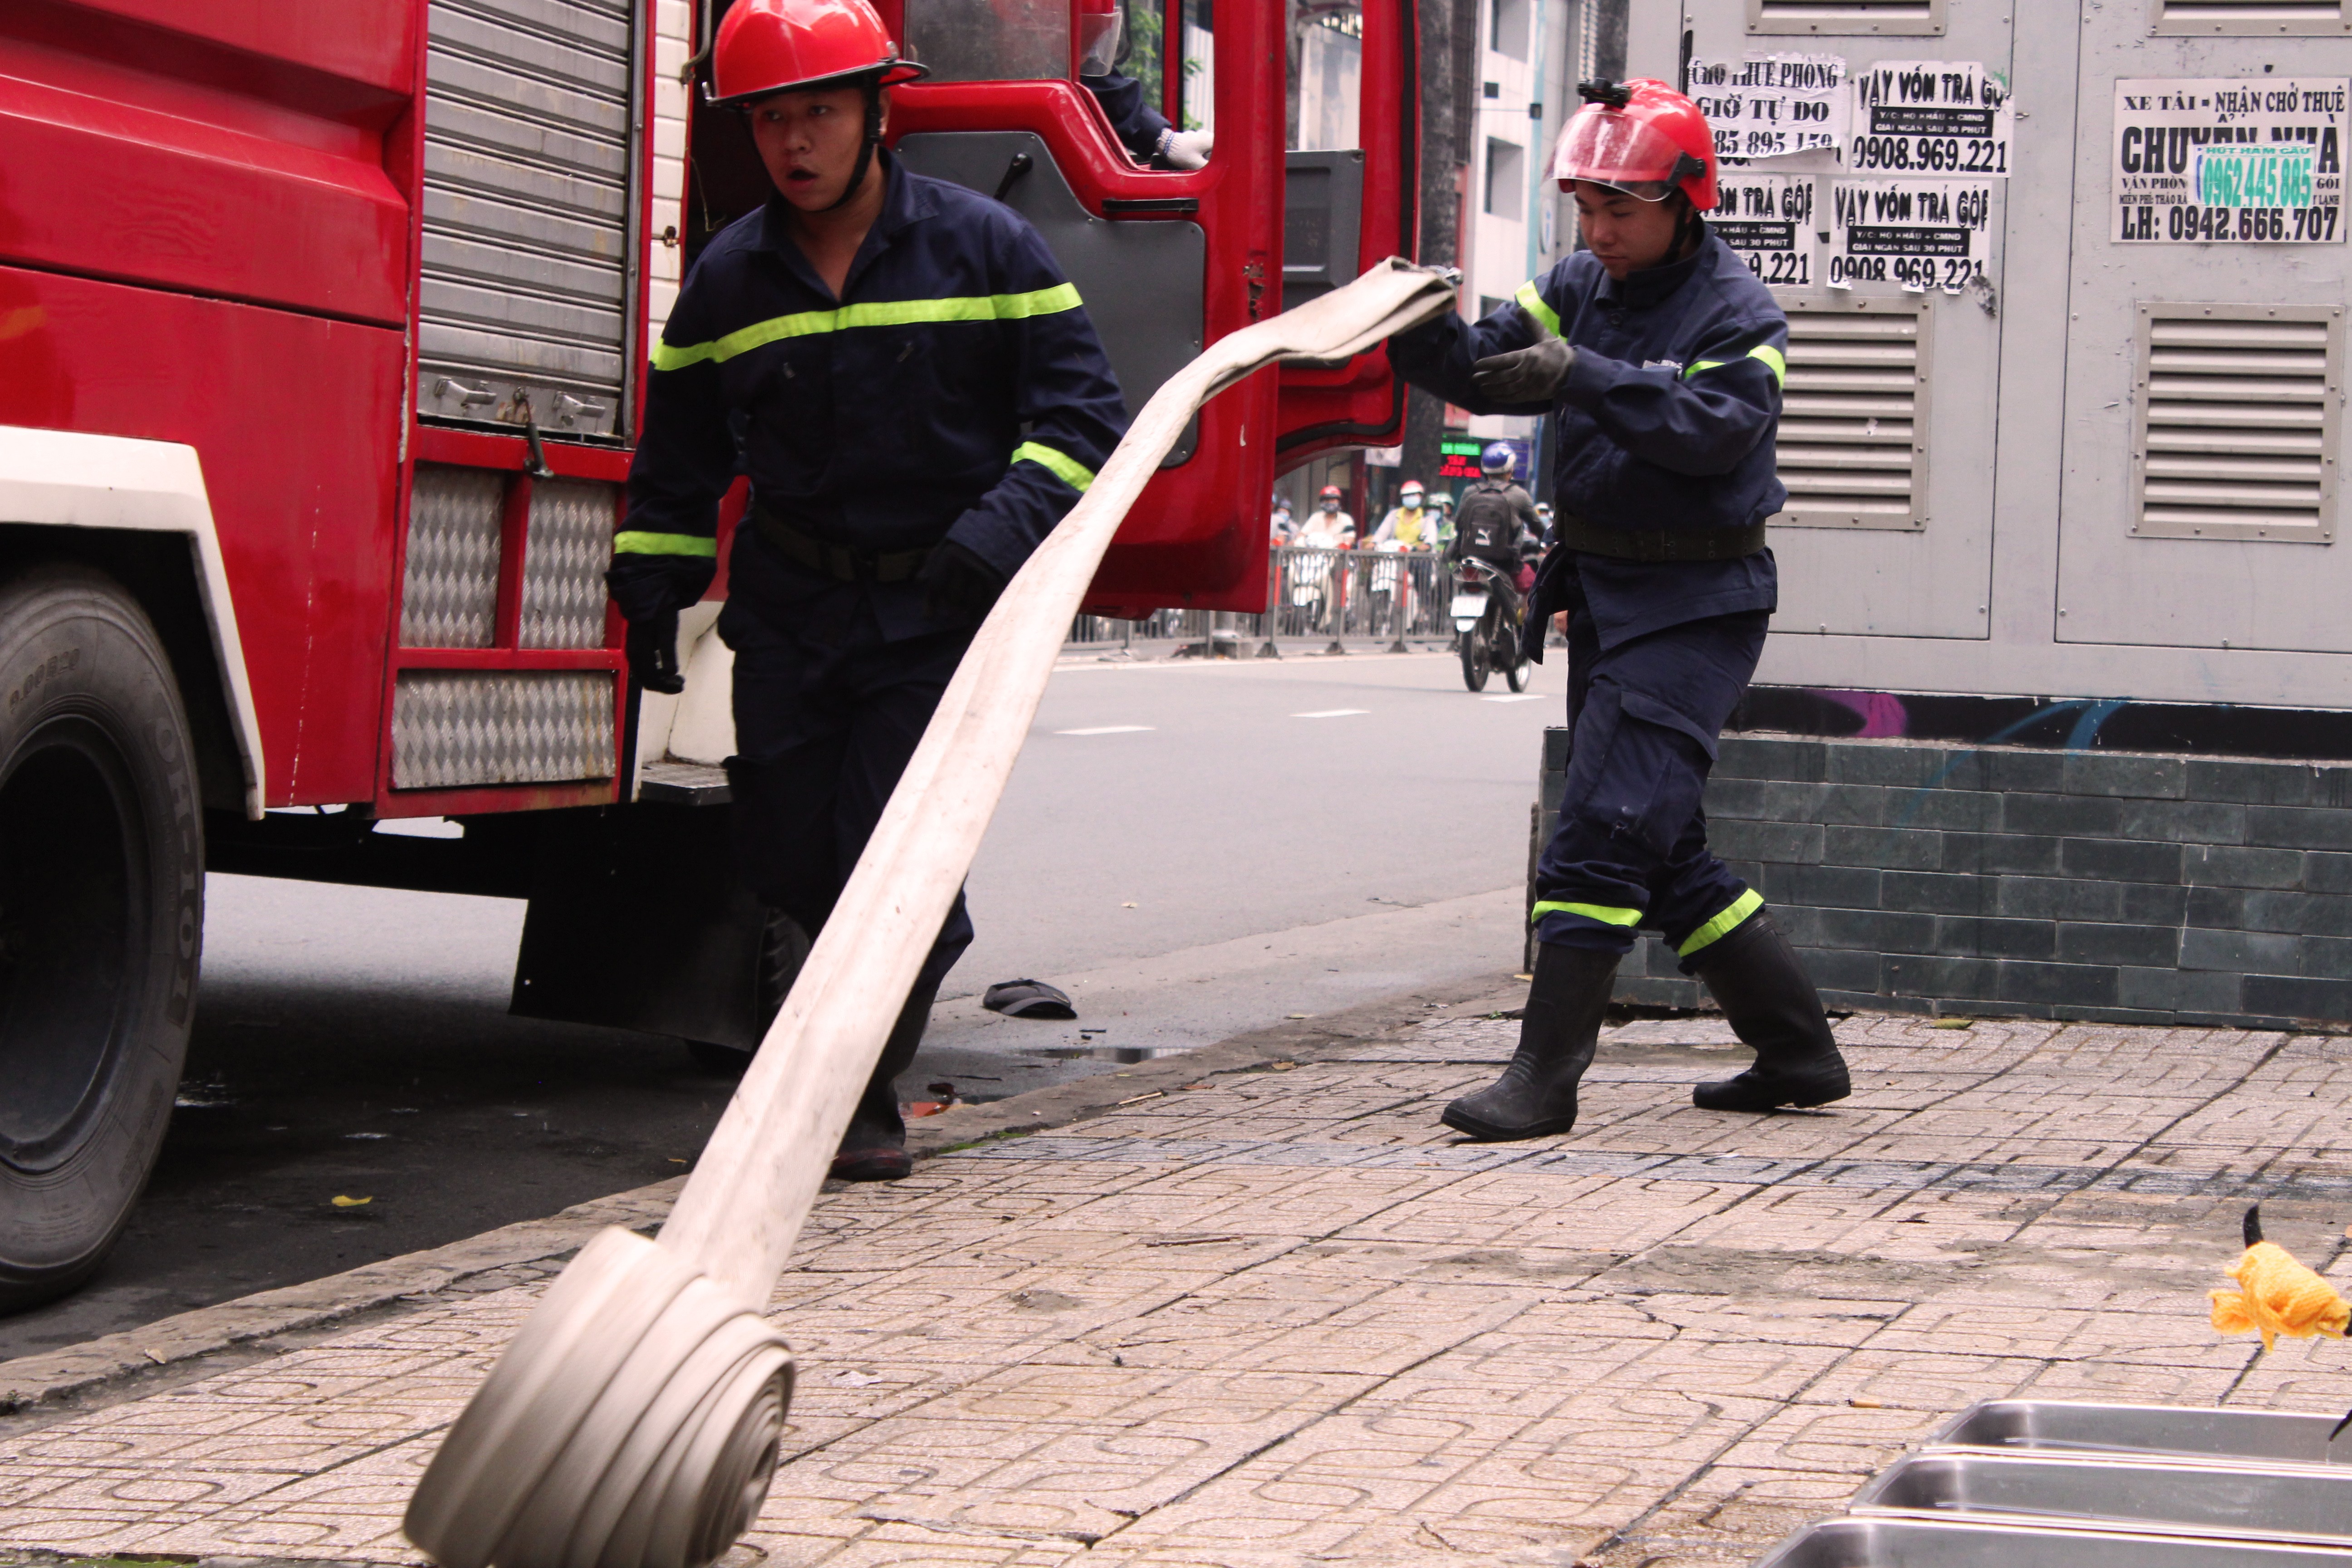 Tin nhanh - Diễn tập phương án chữa cháy, giải cứu hàng trăm người trong trung tâm thương mại  ở TP.HCM (Hình 3).